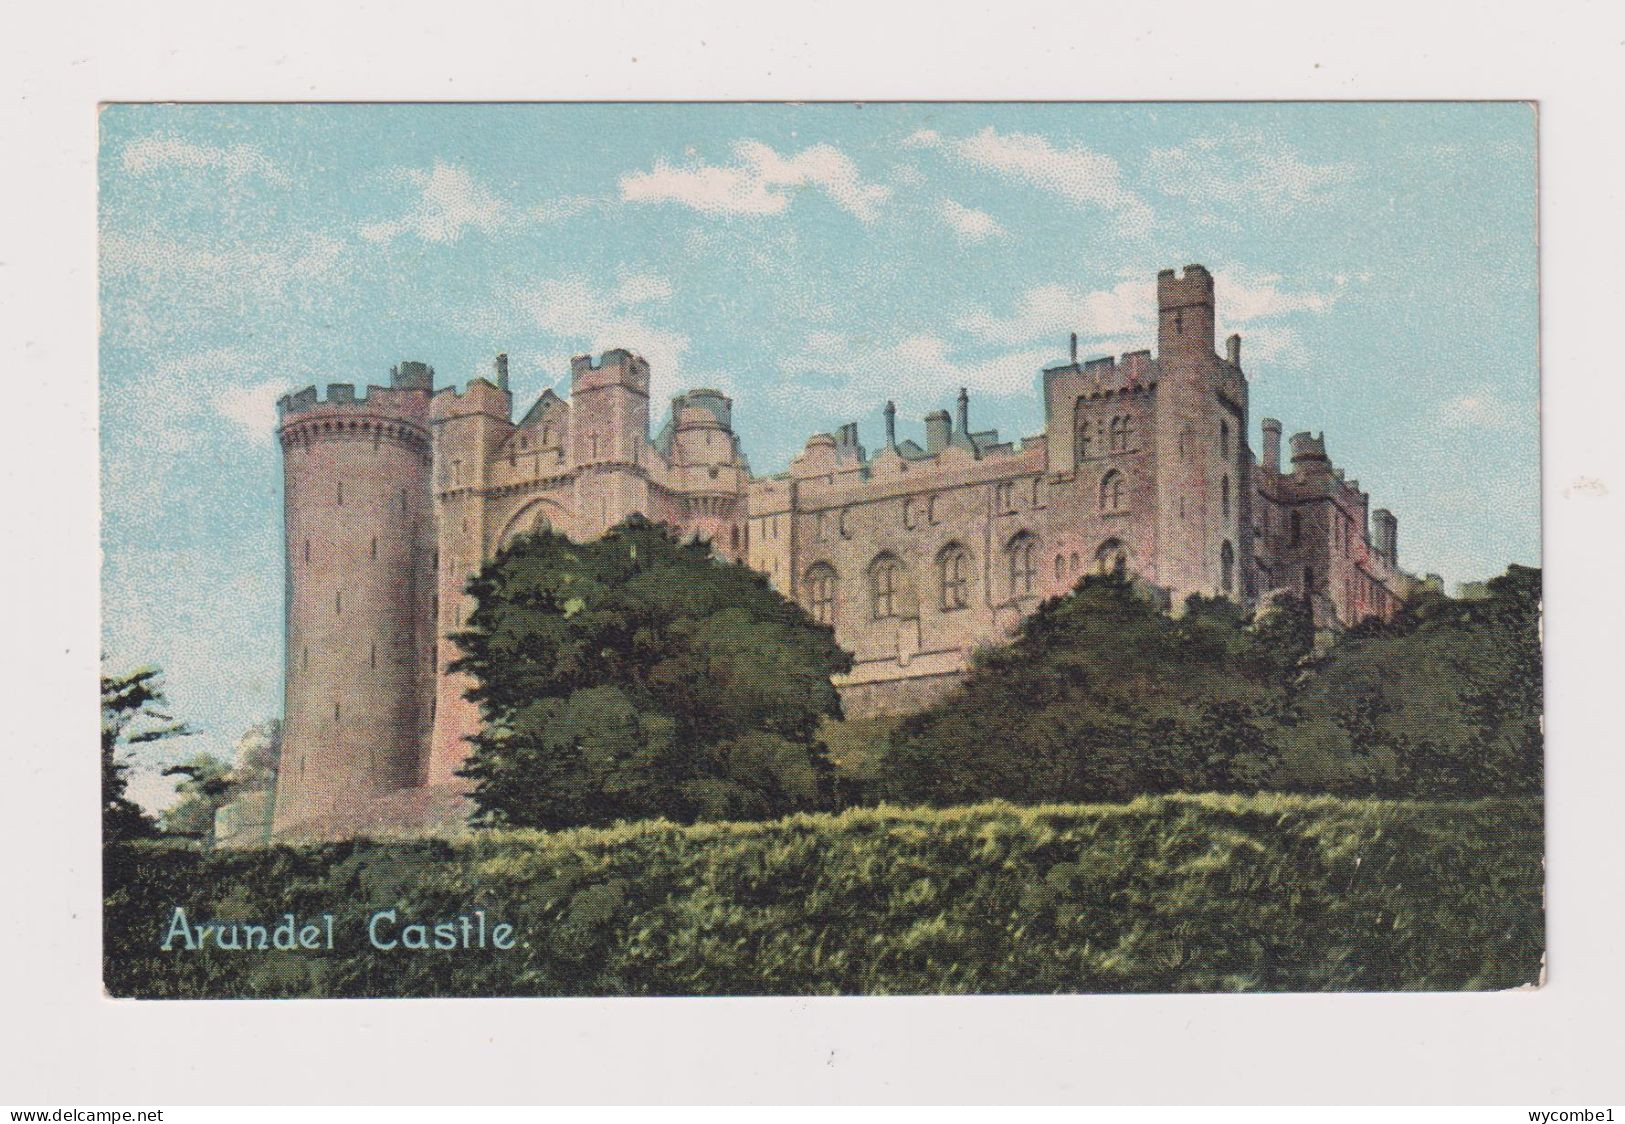 ENGLAND - Arundel Castle Unused Vintage Postcard - Arundel